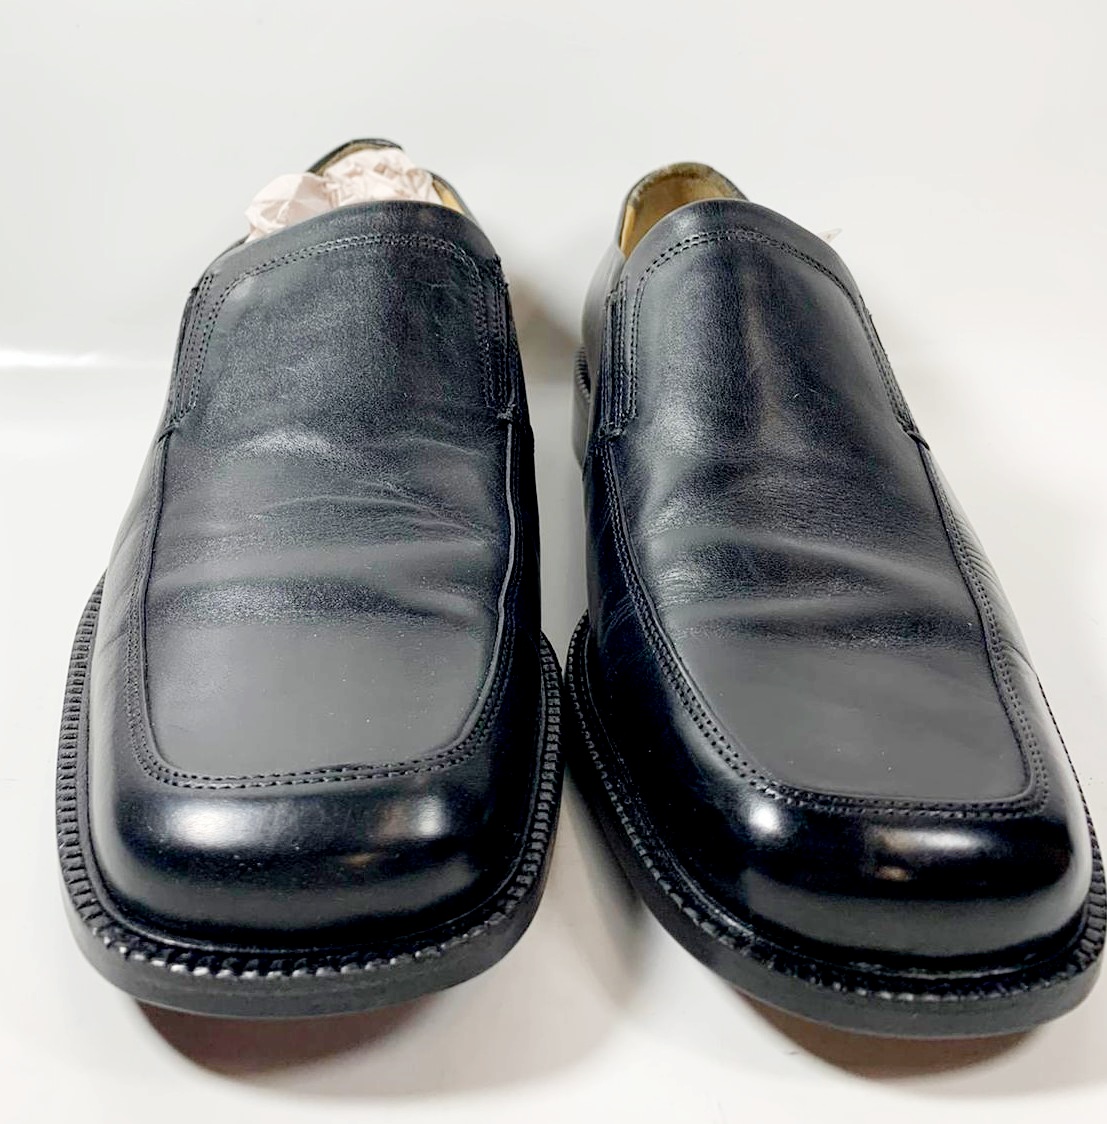 Florsheim Men's Loafer Slip-on Leather Shoes 18204, Black - Size 8D | eBay